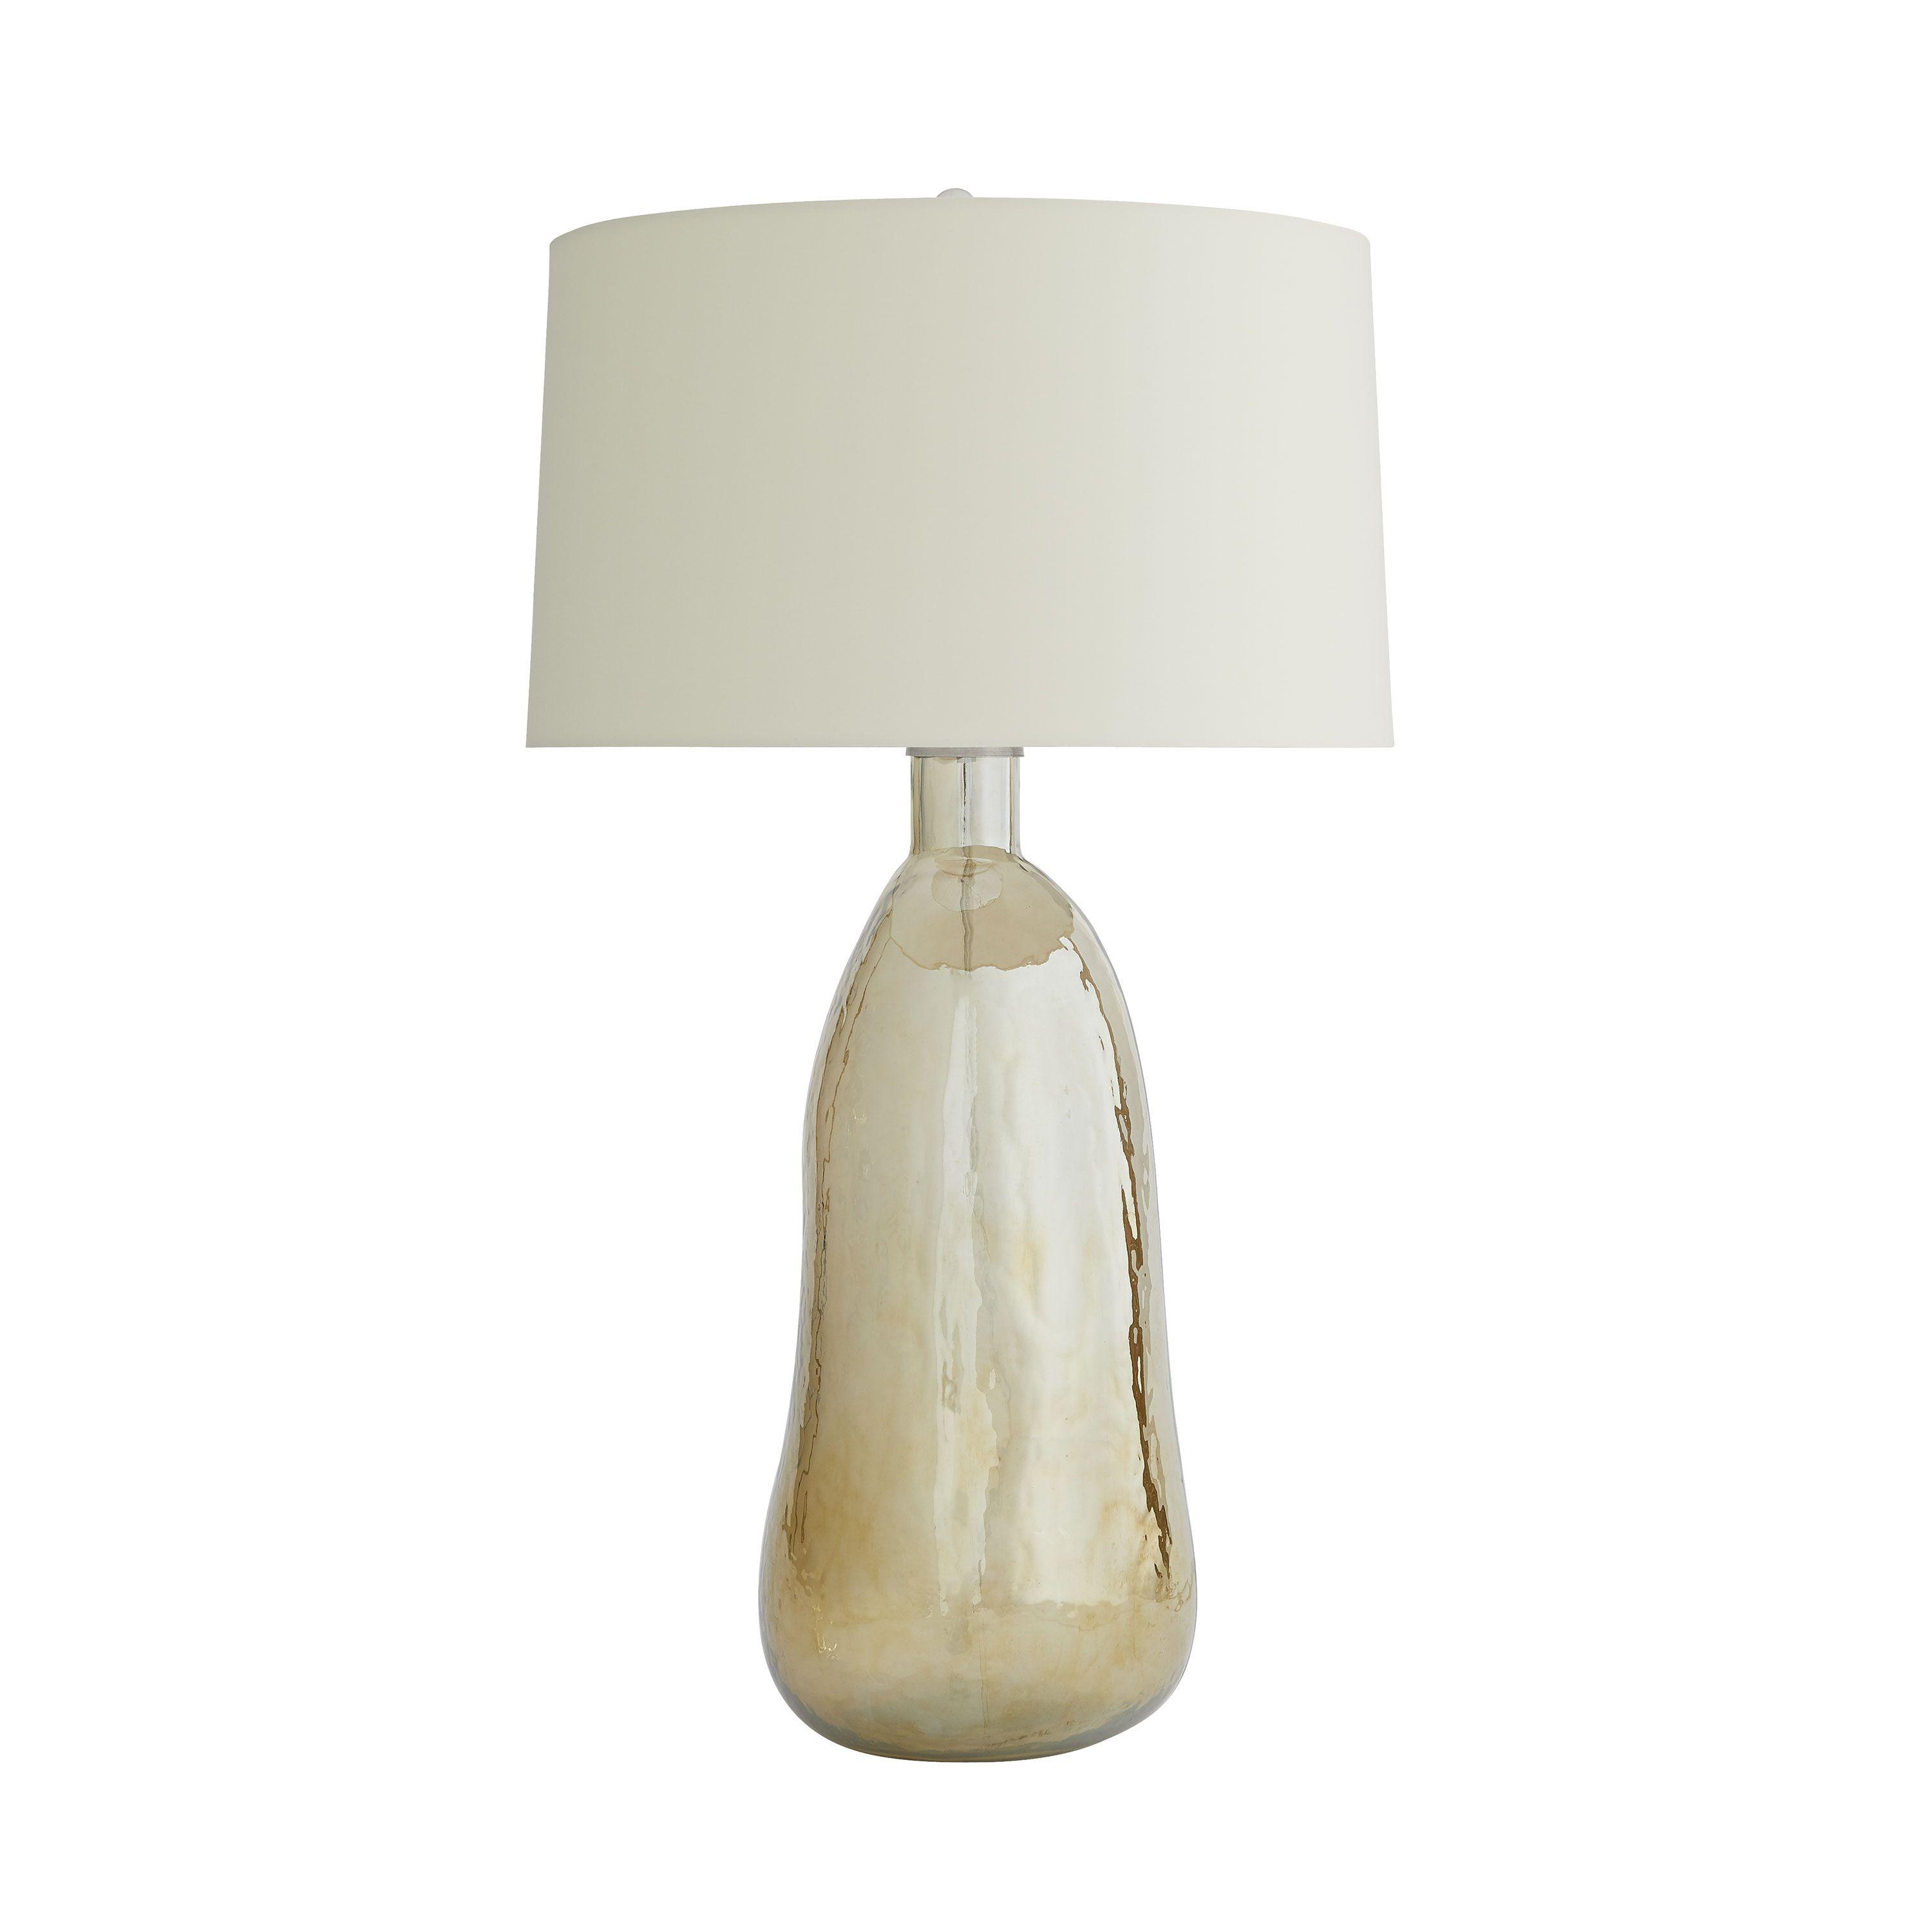 Купить Настольная лампа Joss Lamp в интернет-магазине roooms.ru